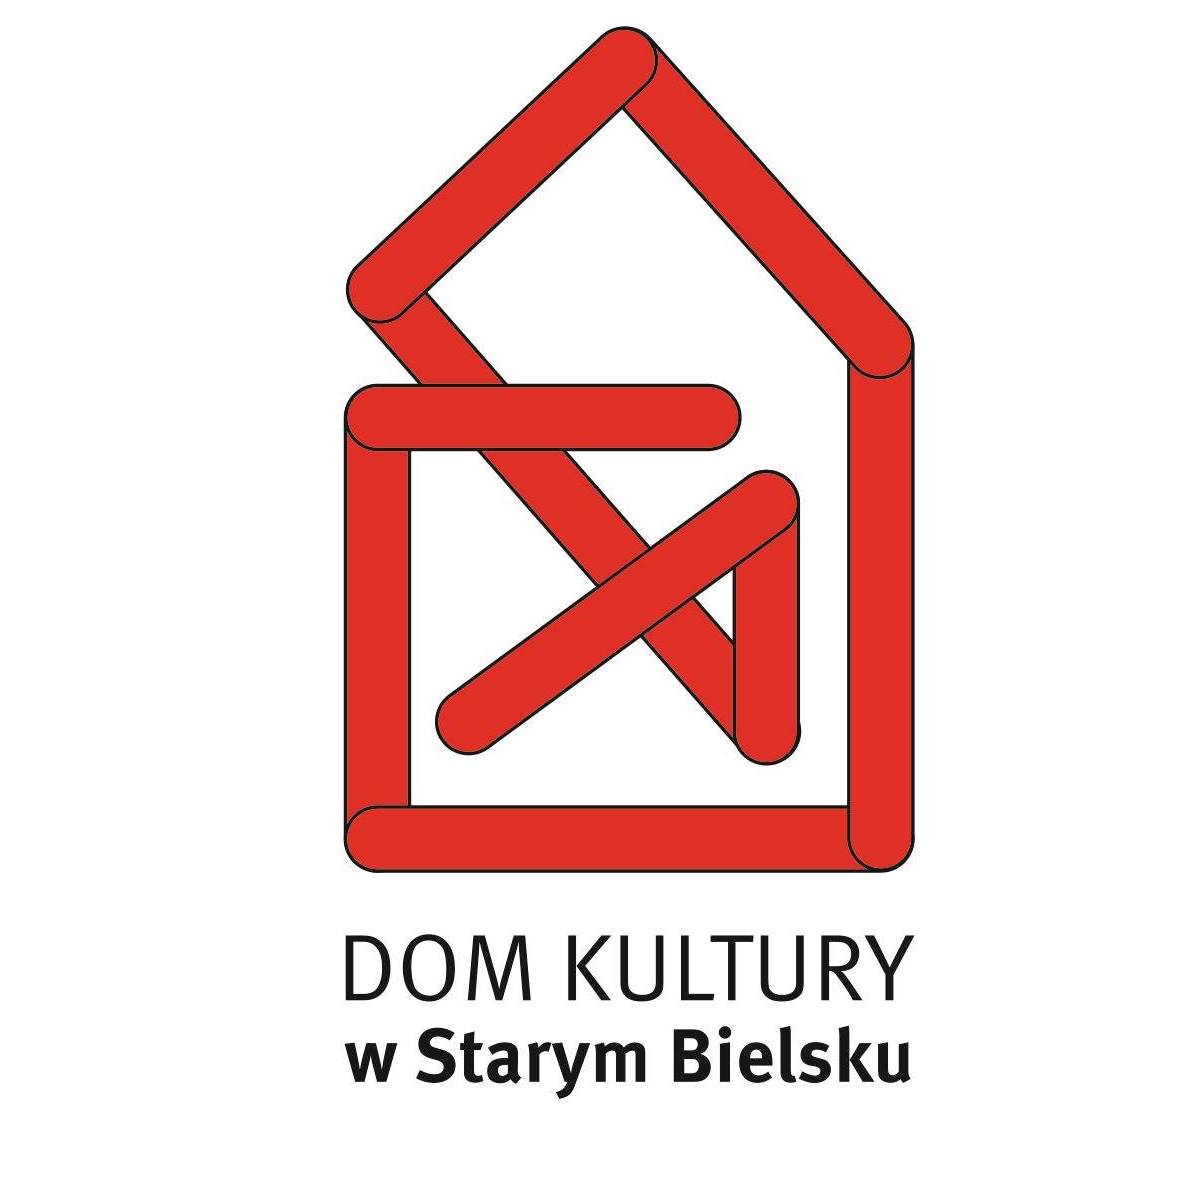  Warsztaty w DK w Starym Bielsku na zdjęciu logo DK